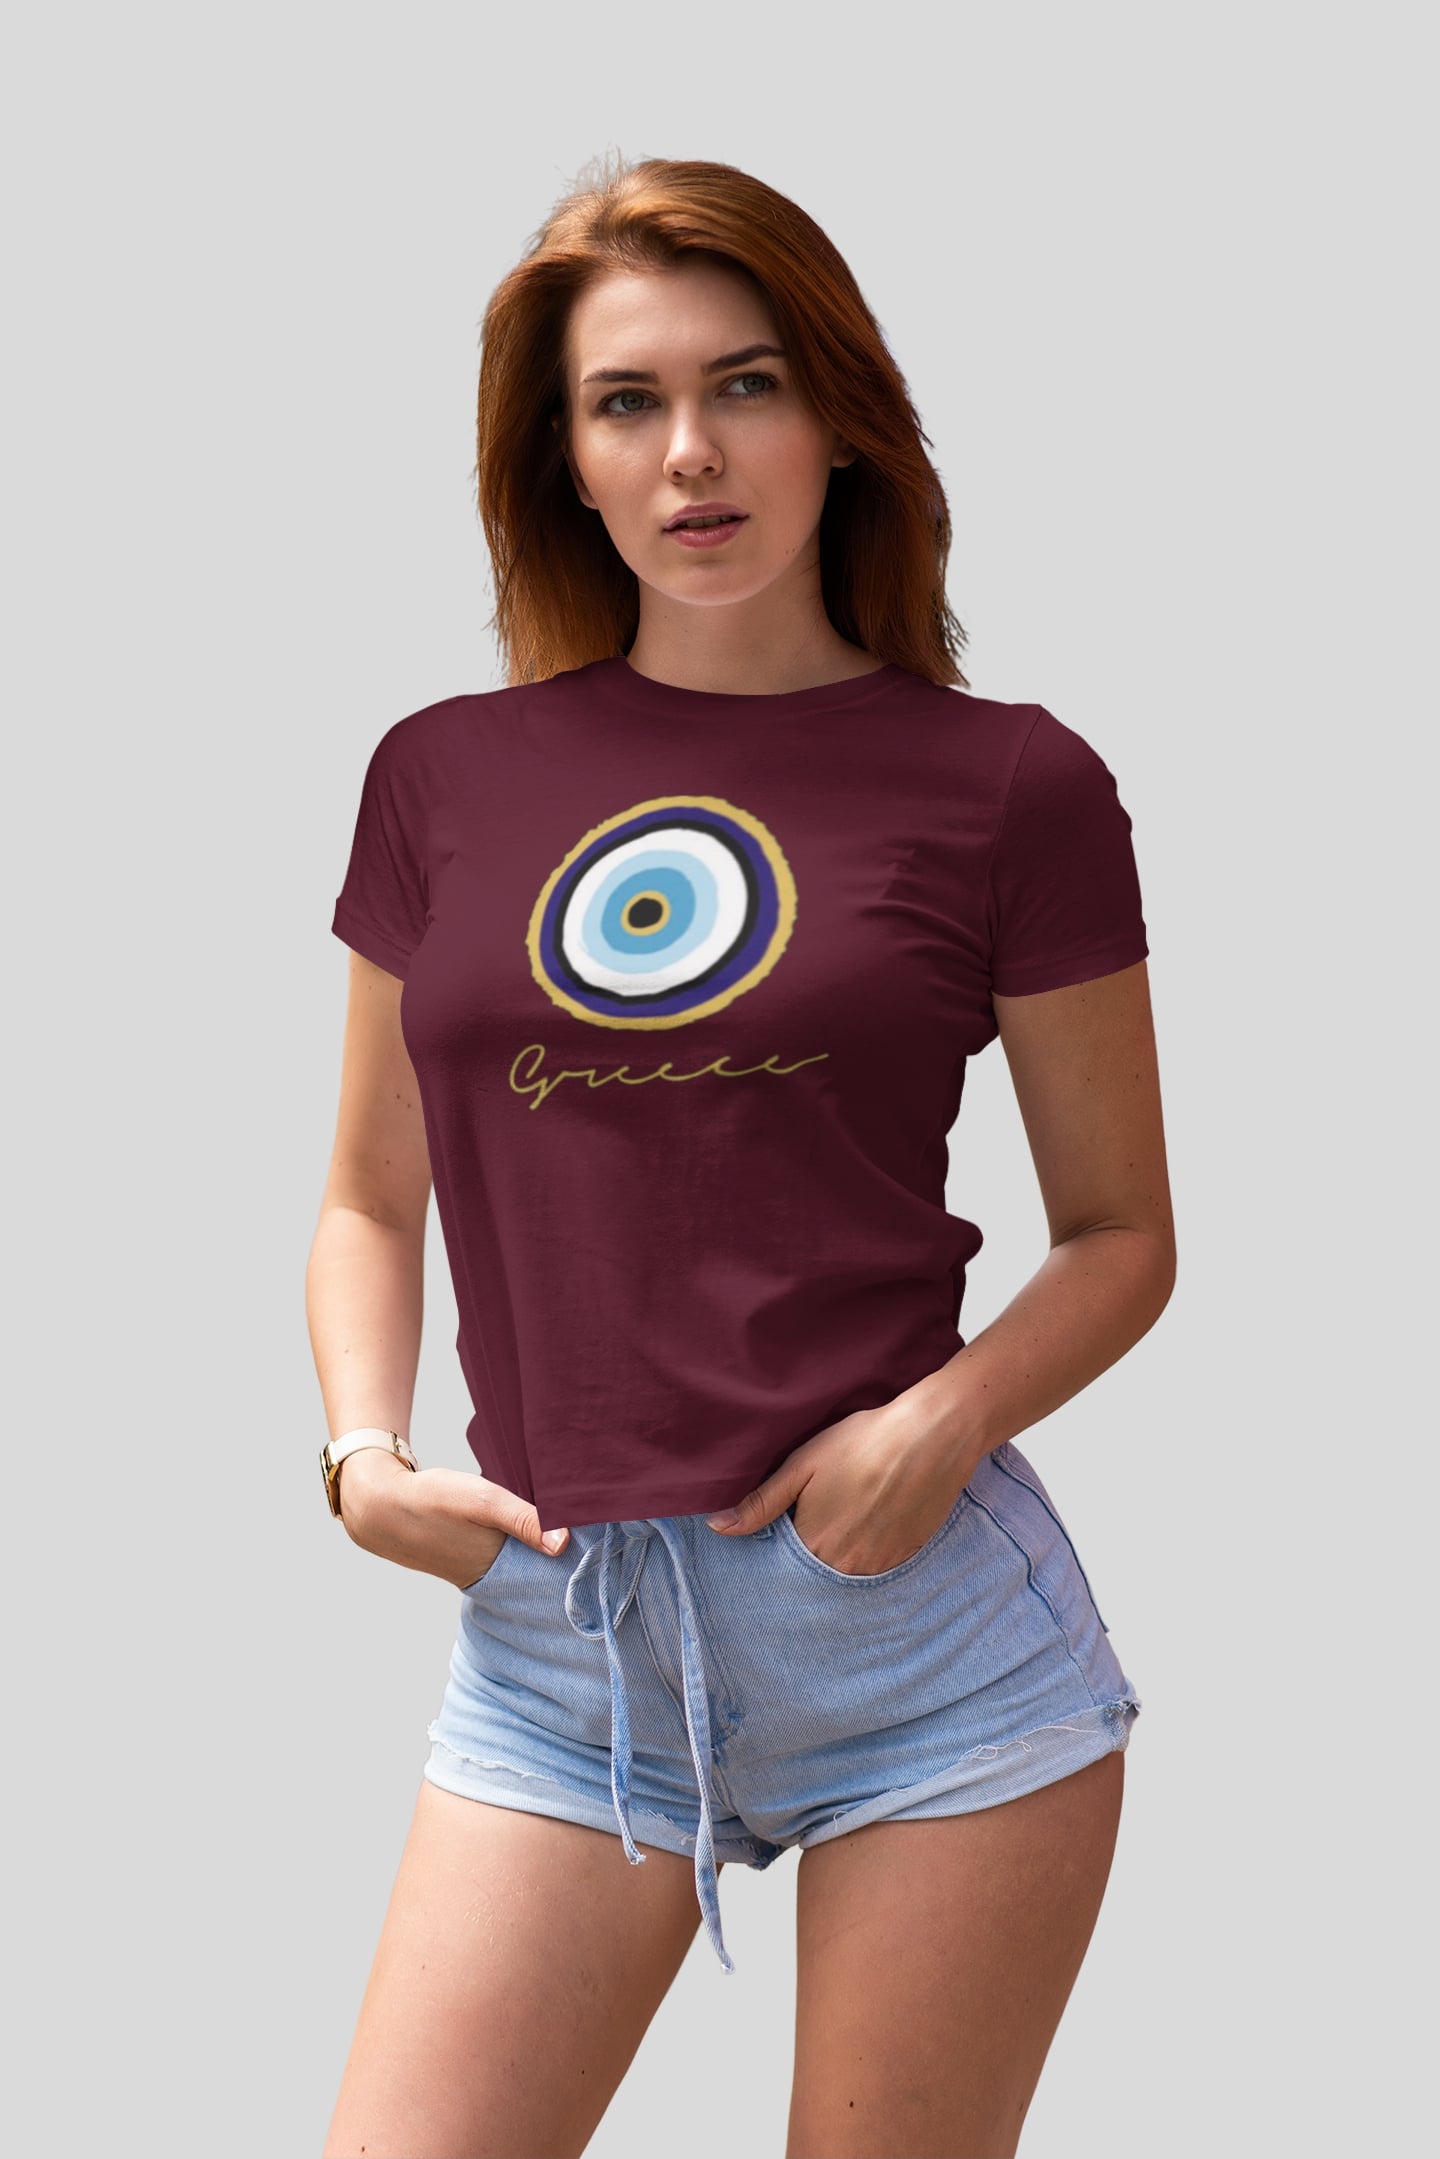 T-shirt-Corfu-Greece-Eye